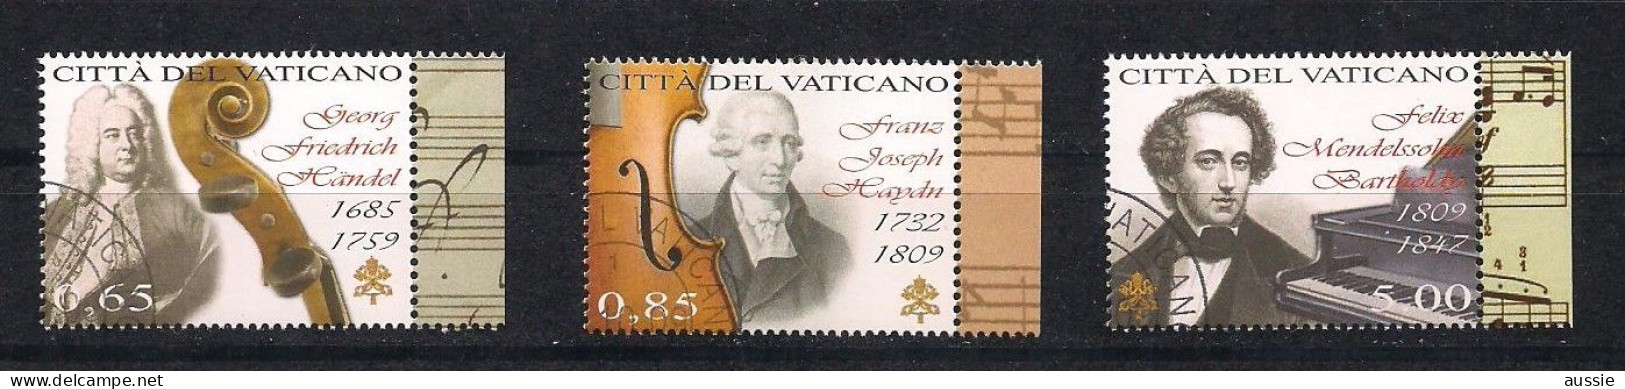 Vatican Vatikaanstad 2009 Yvertn° 1507-1509 (°) Oblitéré Used Cote 19,50 Euro Journée De La Musique - Gebraucht